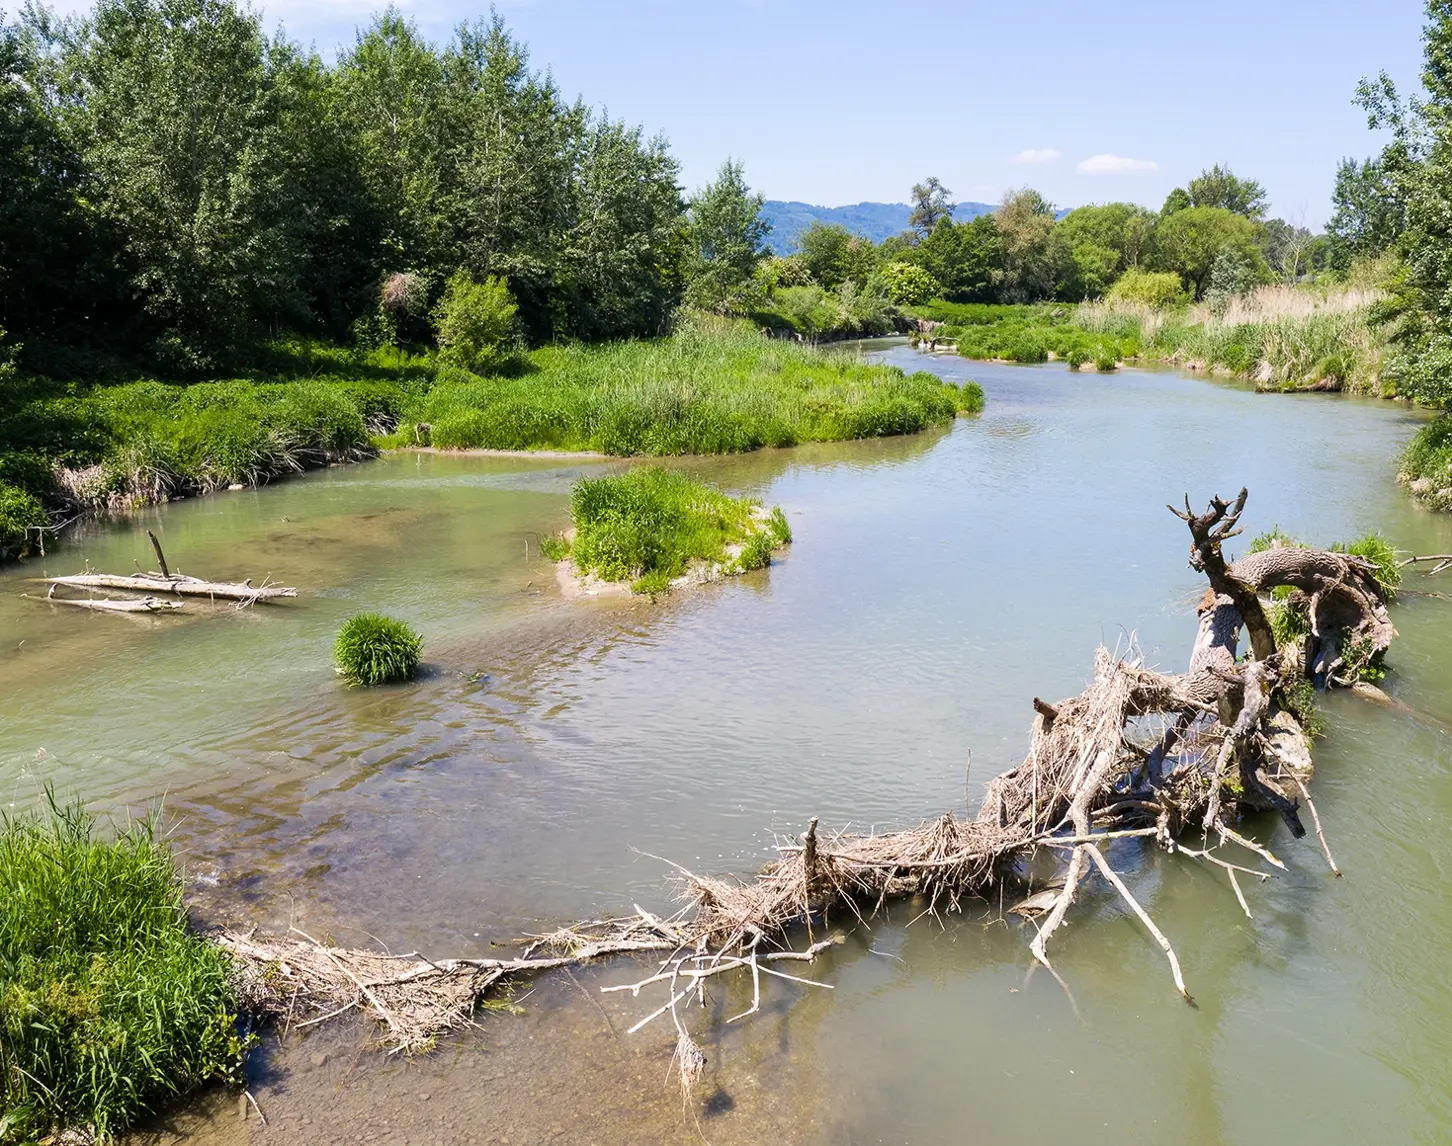 Das Bild zeigt eine renaturierte Aulandschaft entlang der Donau-Inn-Grenze. Grüne übermanshohe Büsche säumen das Flussufer. Im Fluss sind vereinzelt kleine grüne Inseln zu sehen. Auch ein großer Baumstamm mit Gestrüpp wird in Zukunft den Fischen als Unterschlupf dienen.